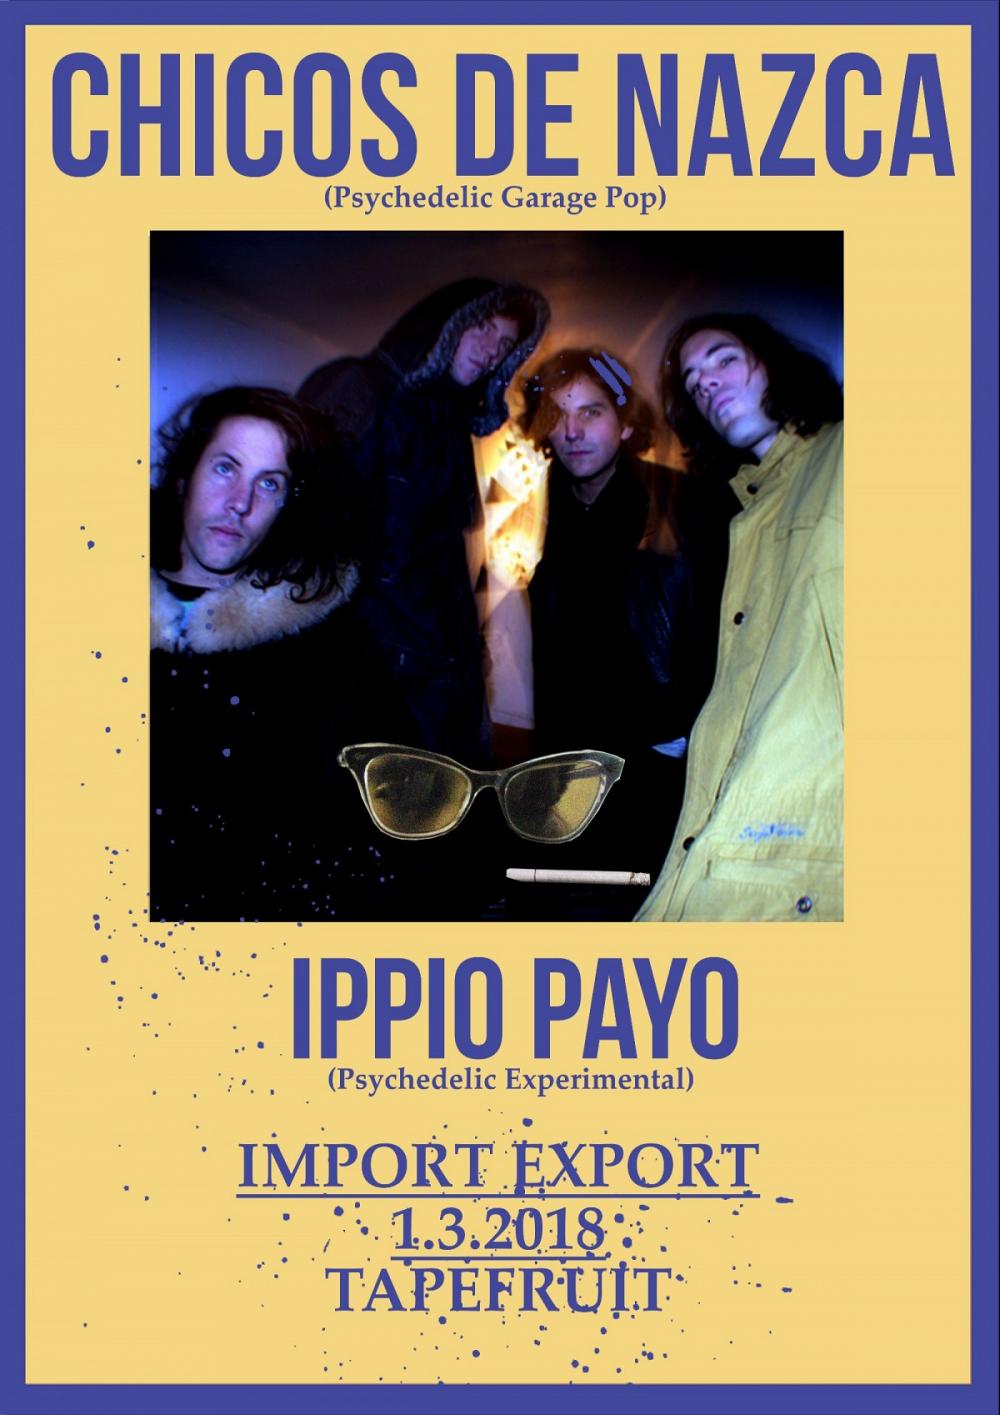 Tapefruit Konzert: Chicos de Nazca + Ippio Payo | 01.03.2018 @ Import Export